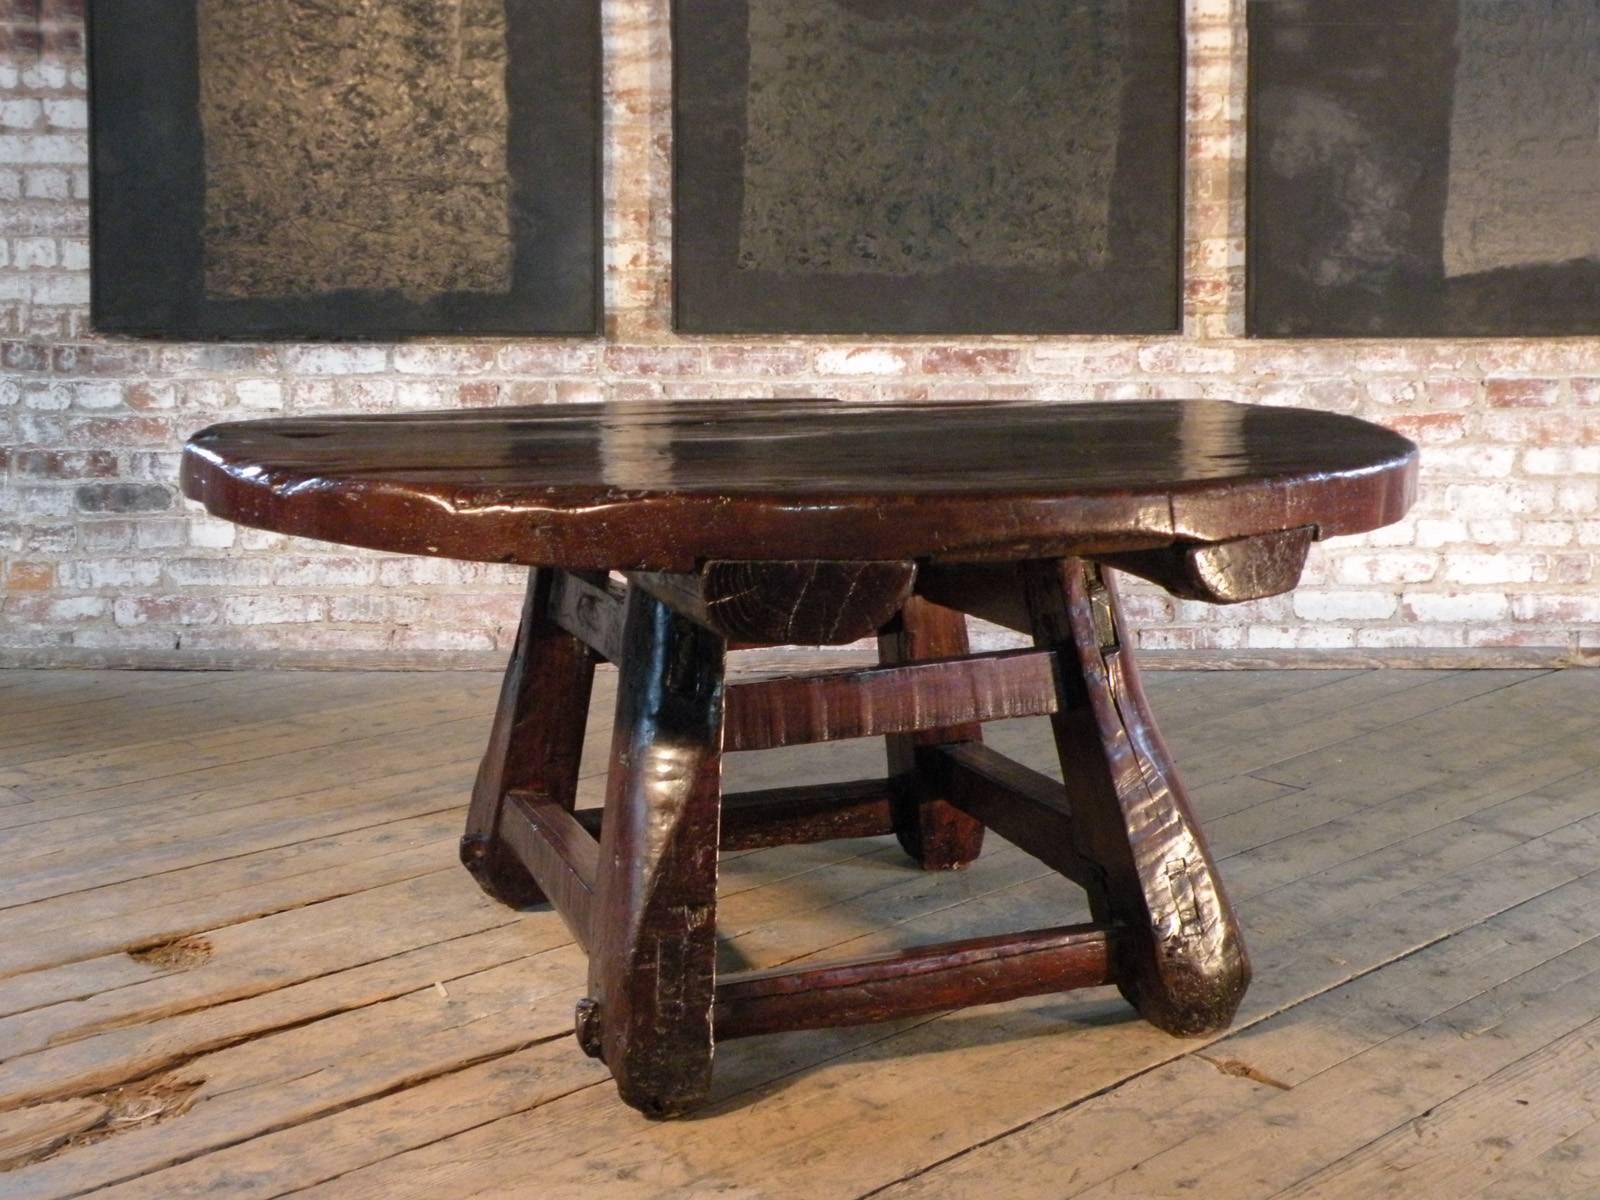 Insolite, frappant, audacieux.
Grande table basse ronde avec un plateau massif soutenu par une base carrée évasée construite à partir de poutres en bois grossièrement taillées.